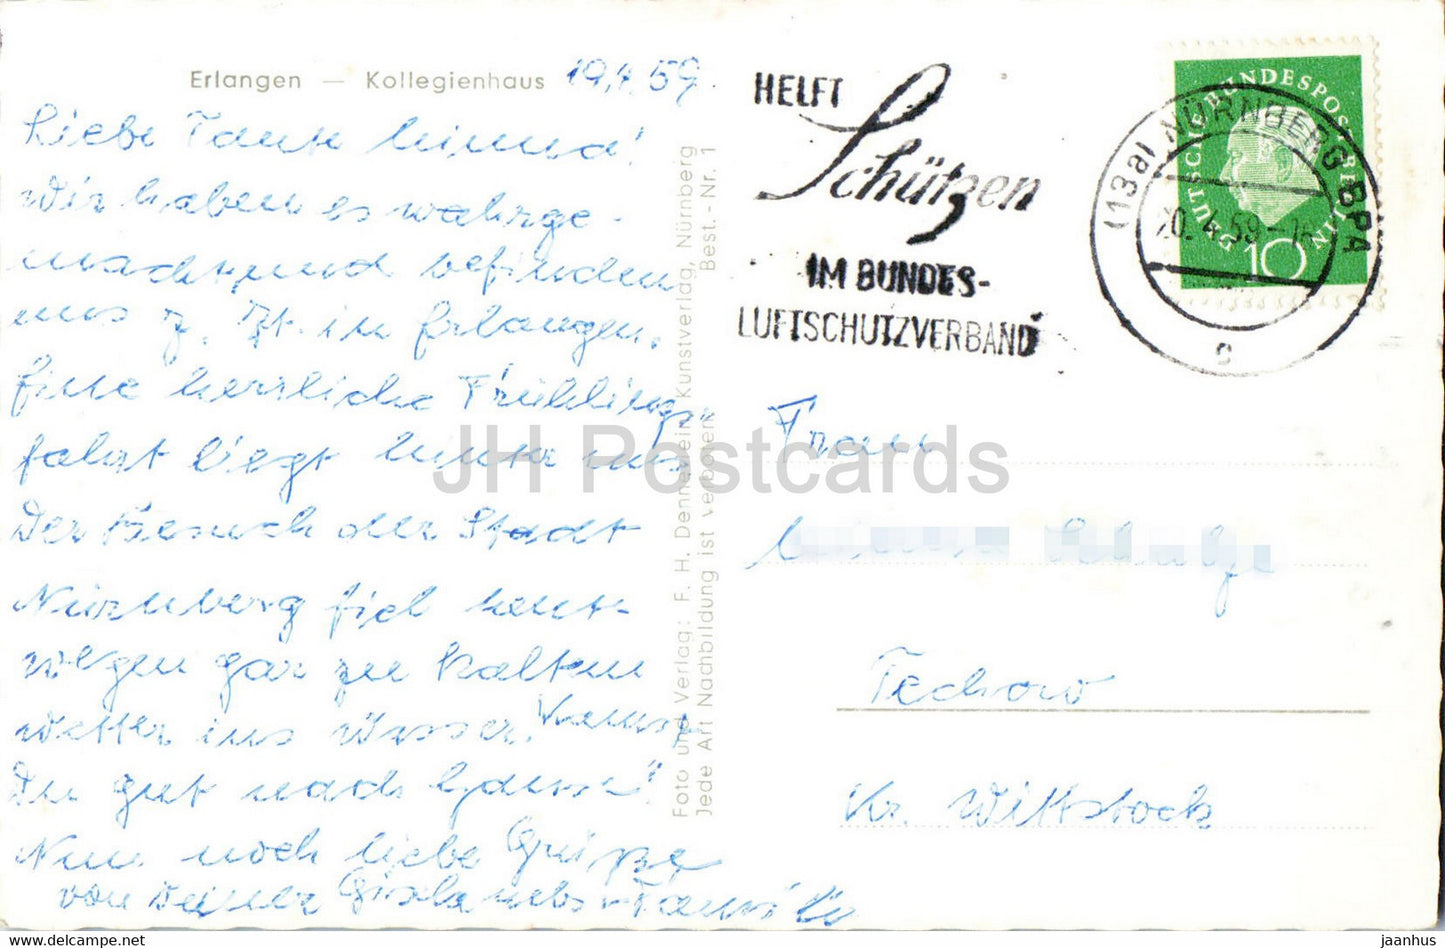 Erlangen - Kollegienhaus - alte Postkarte - 1959 - Deutschland - gebraucht